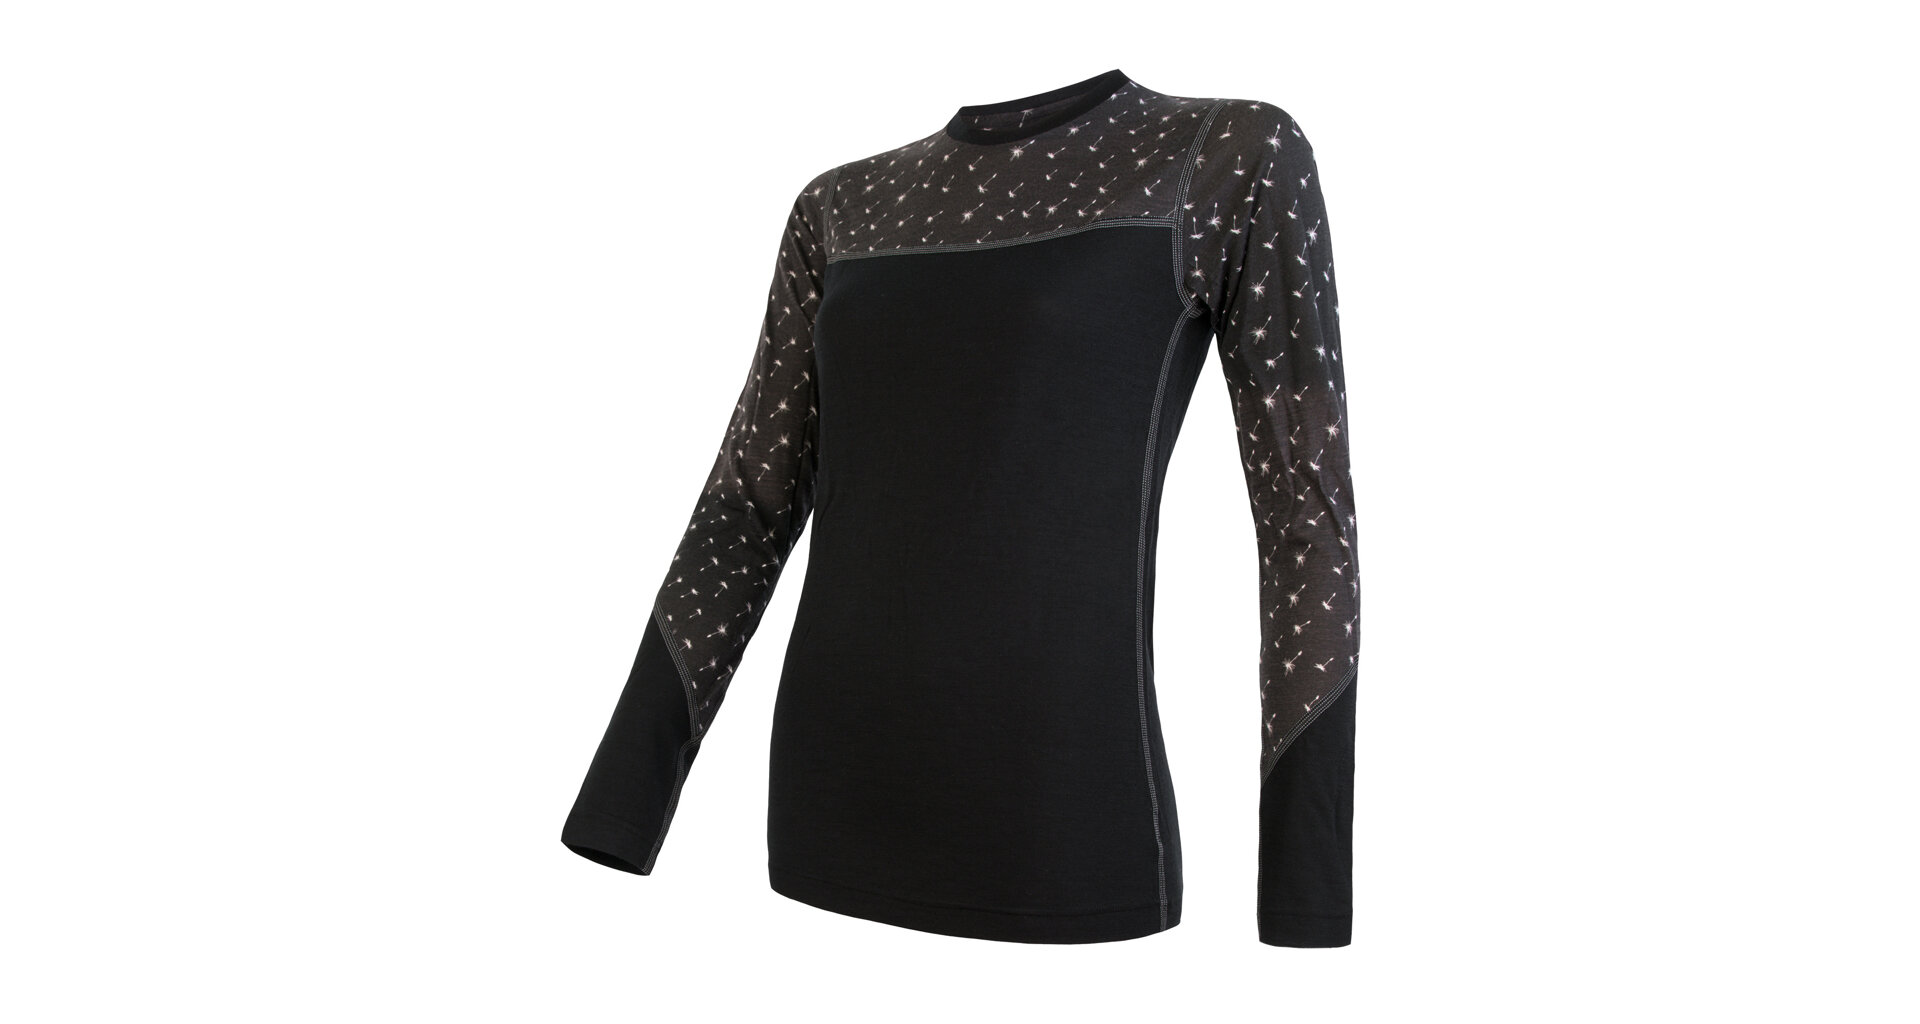 SENSOR MERINO IMPRESS dámské triko dl.rukáv černá/pattern Velikost: XL